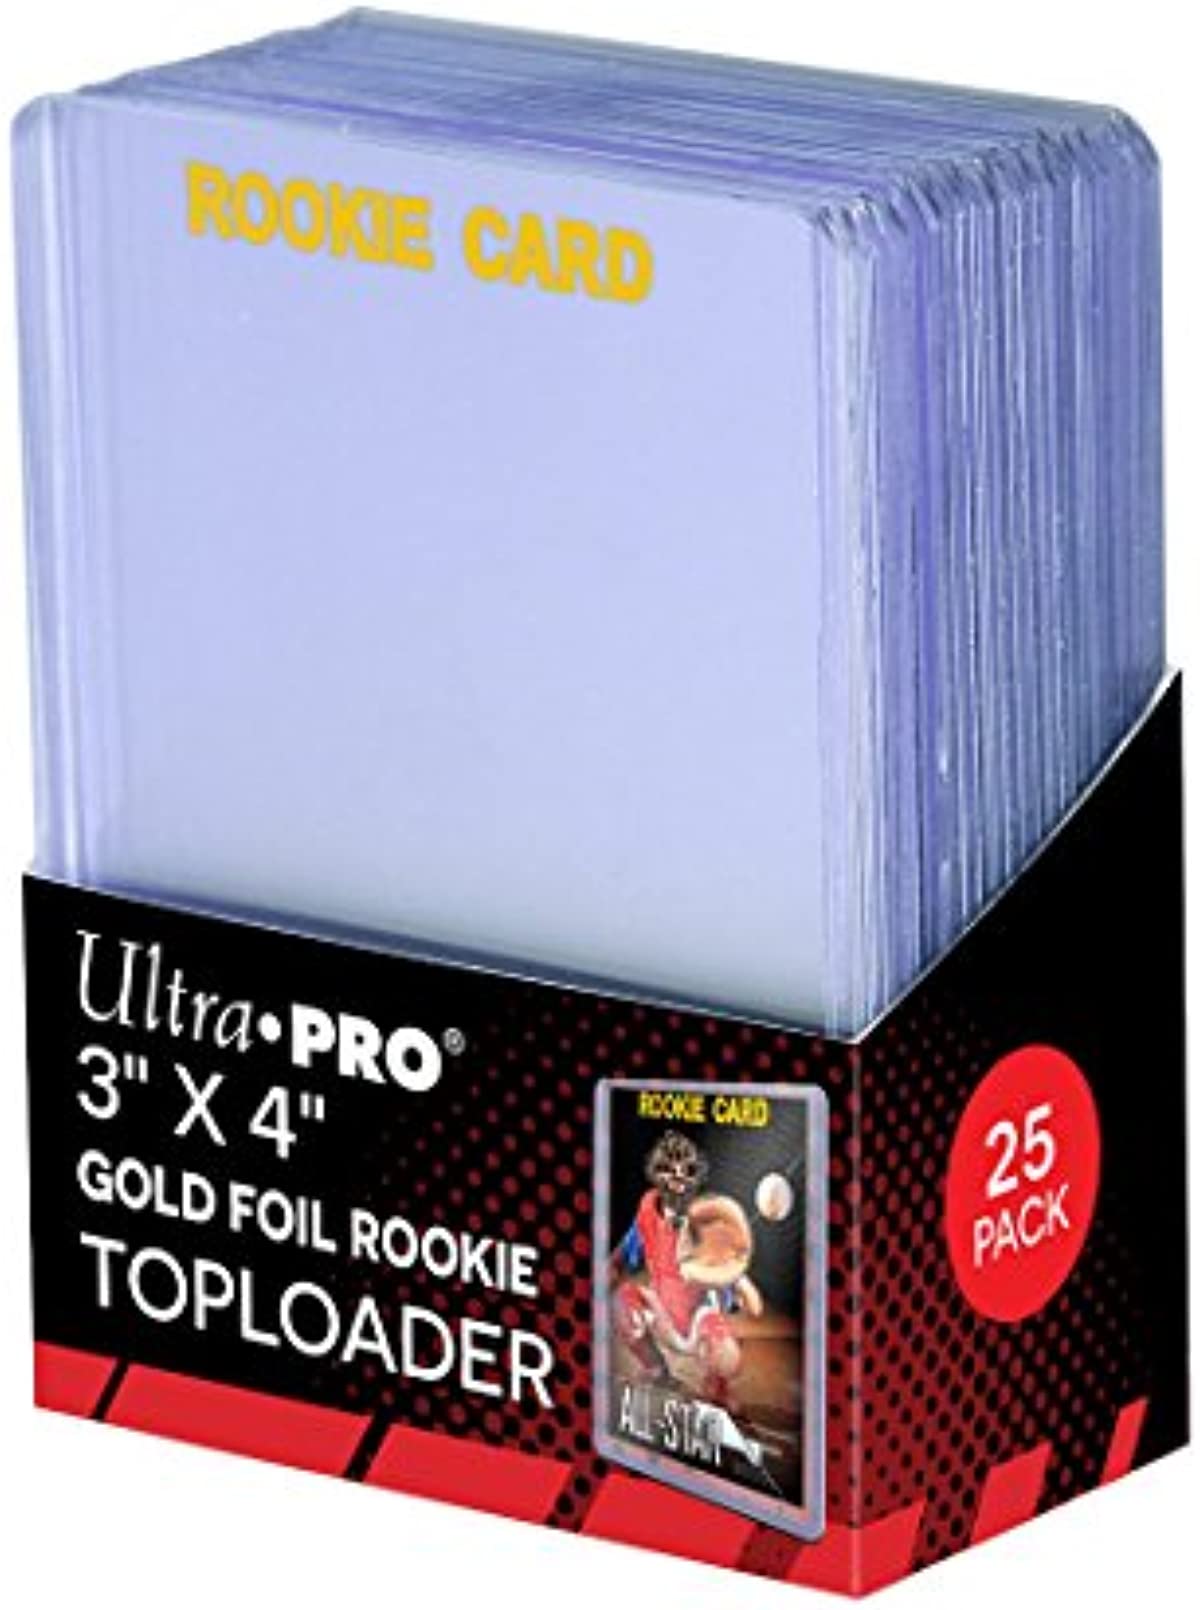 ULTRA PRO TOPLOADER 25 PACK 3 X 4 35PT GOLD FOIL ROOKIE CARD PROTECTORS